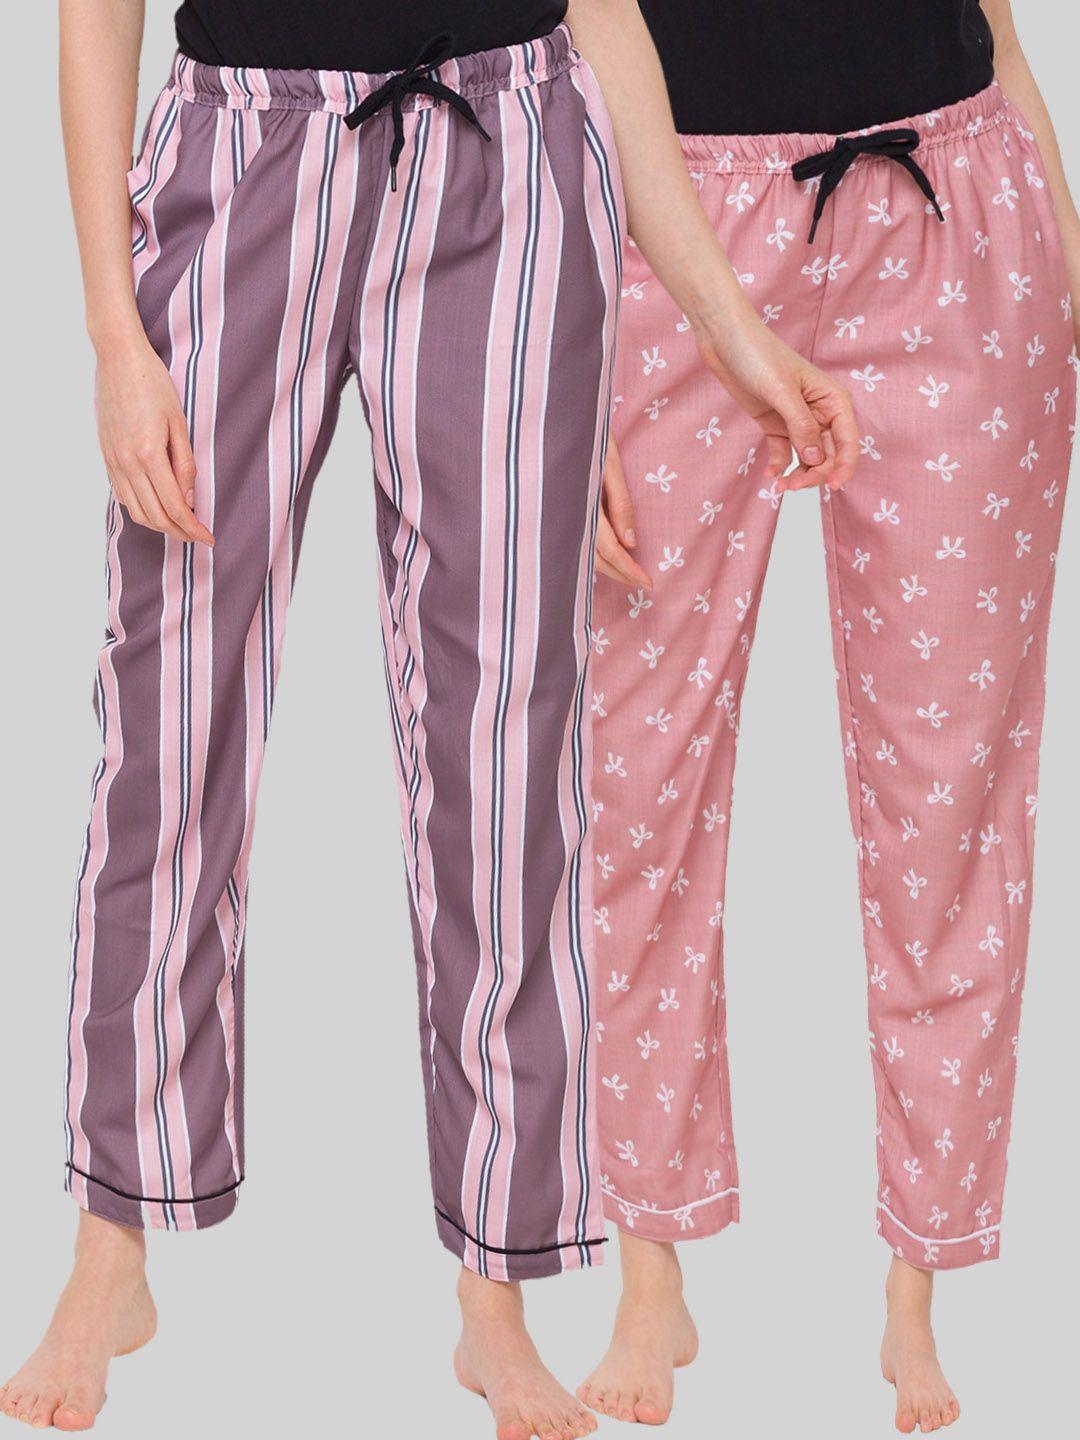 fashionrack woman set of 2 brown & pink striped lounge pants